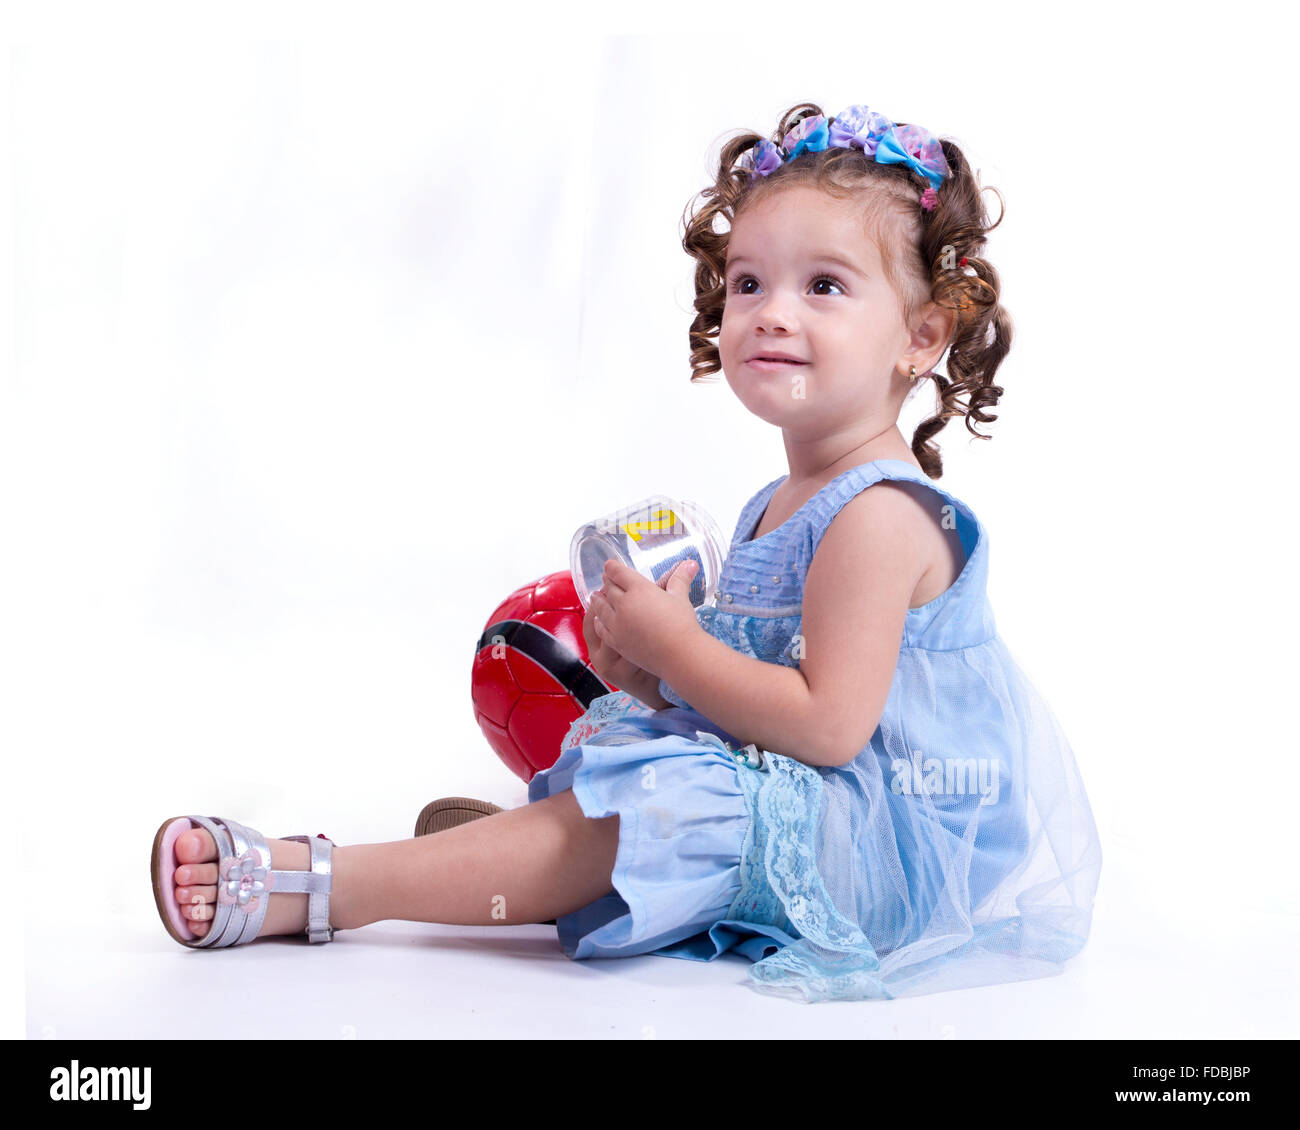 Ragazza seduta con una manopola in mano e una palla rossa dietro di lei Foto Stock